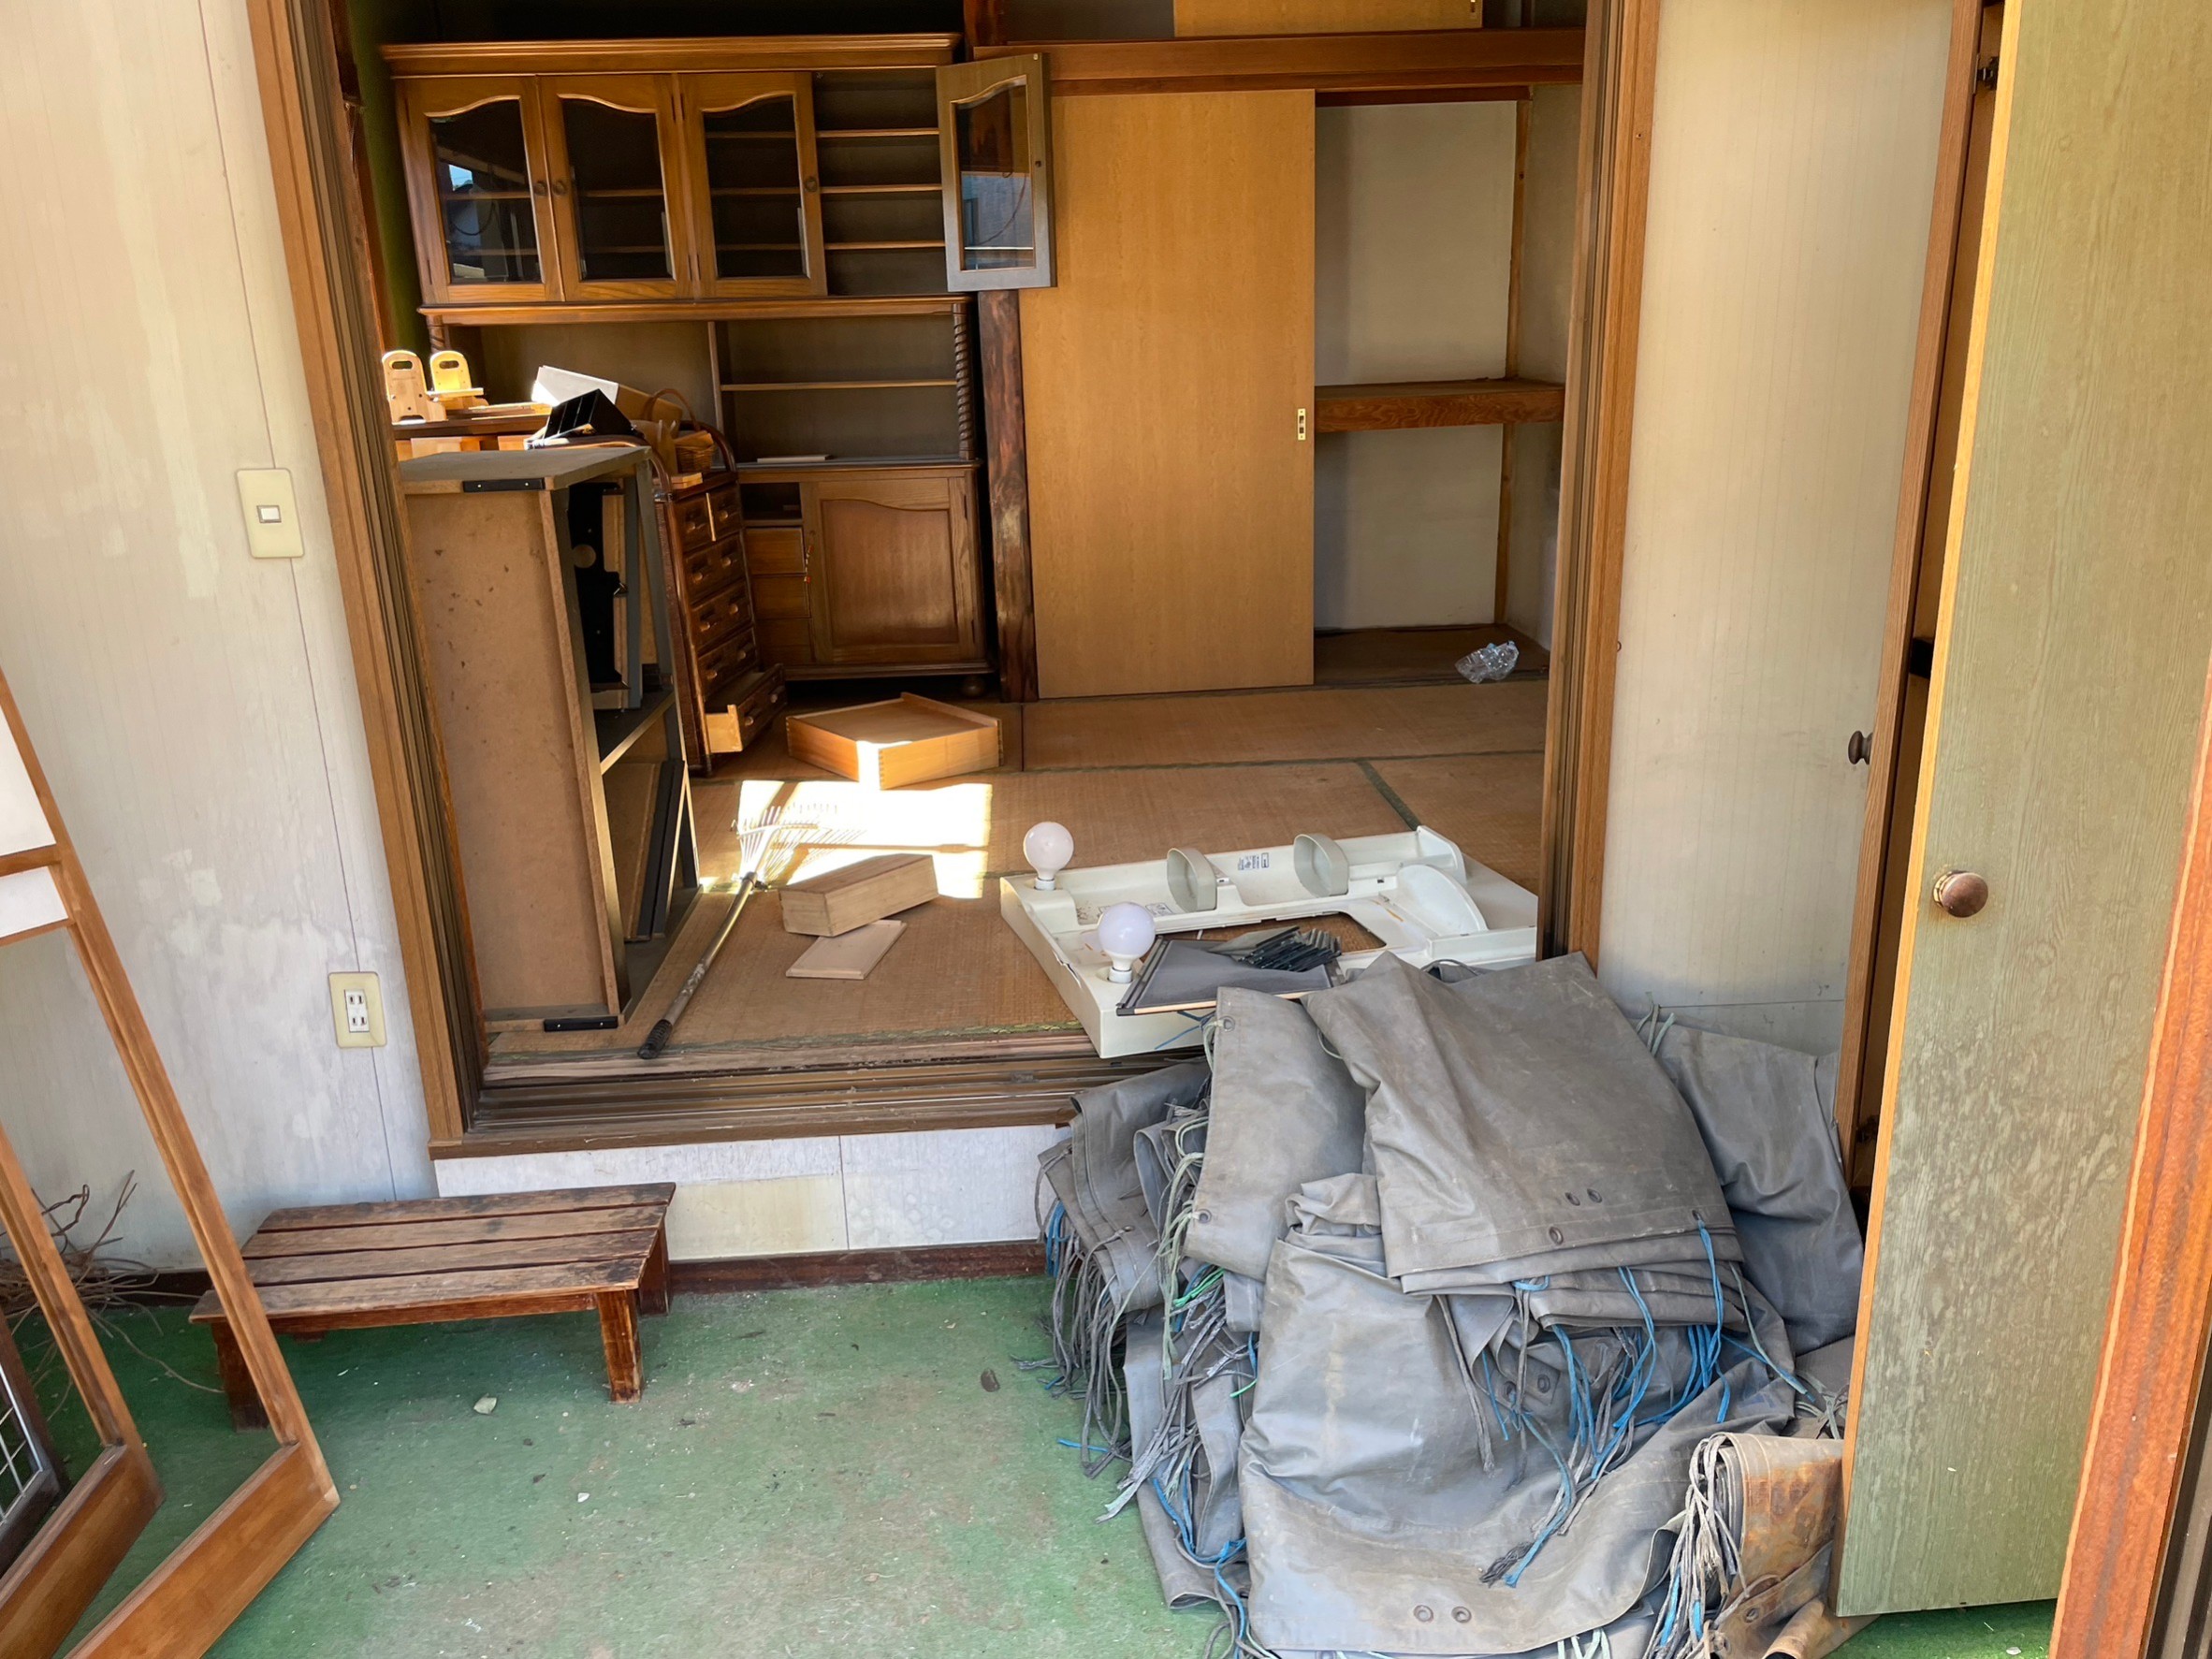 埼玉県草加市の部屋の片付けと不用品回収および解体工事，片付けを終えて回収を待つ不用品だけが残る室内